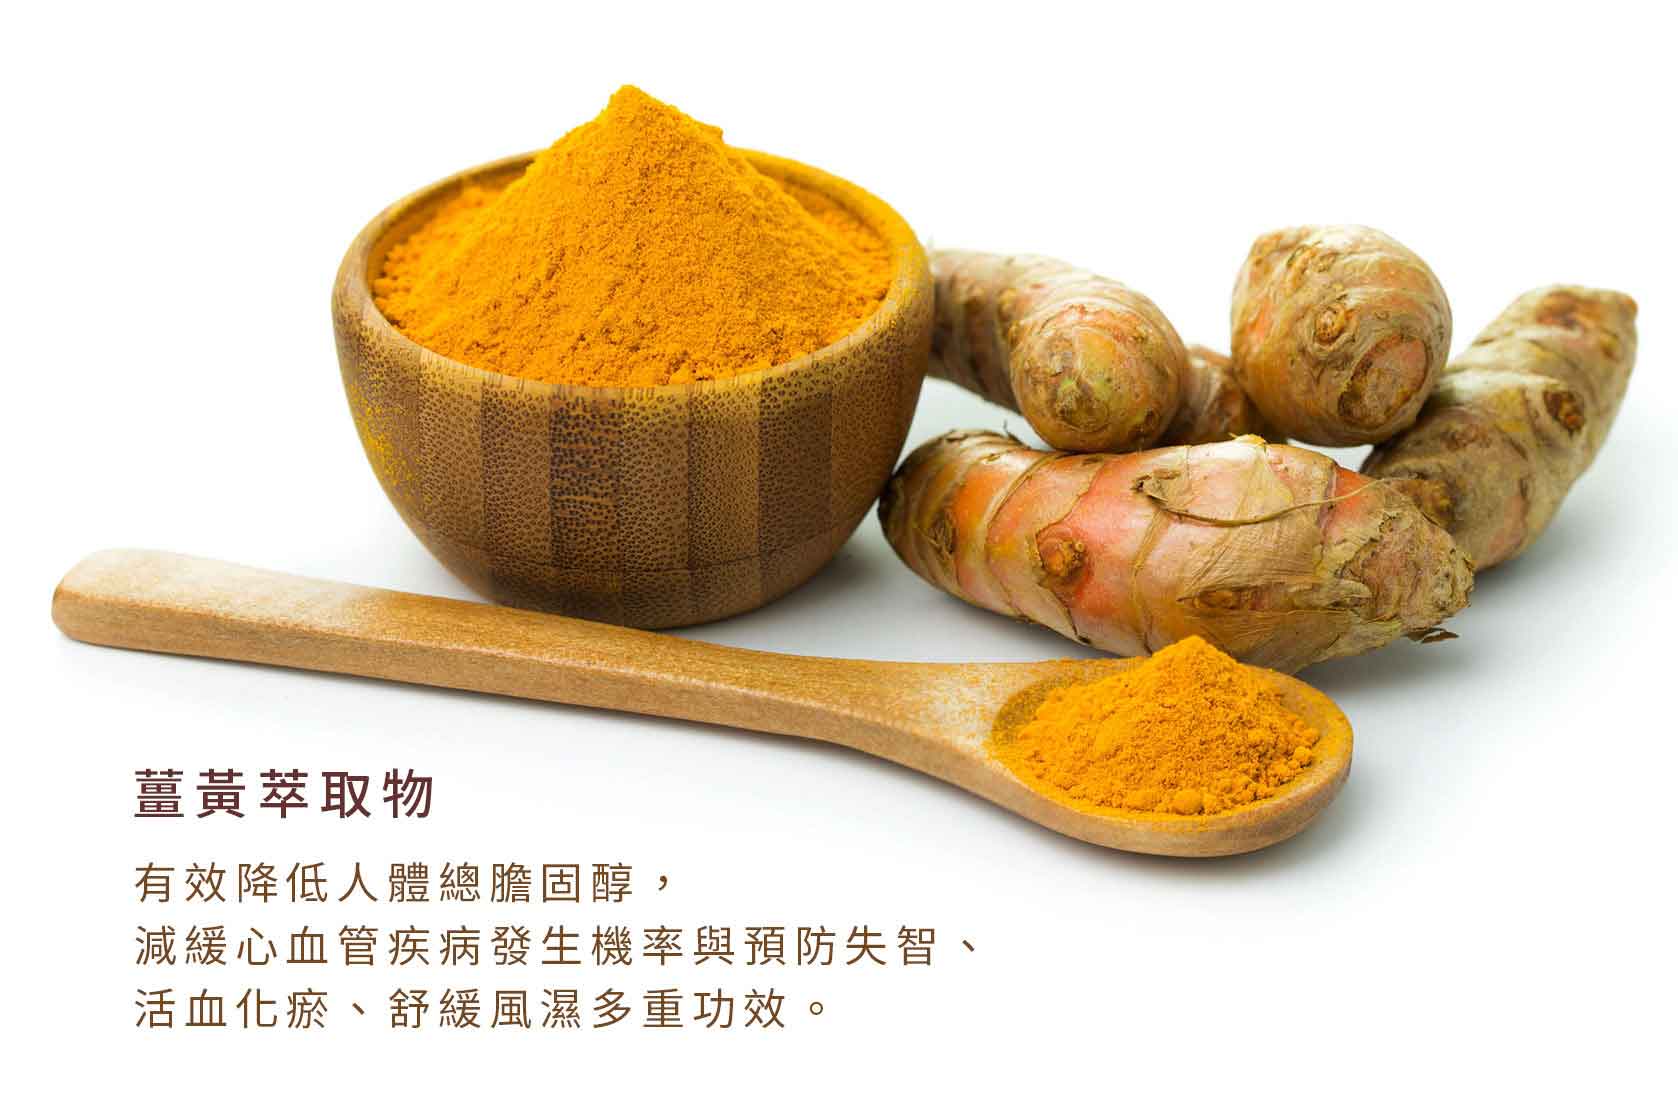 『讚恩』九種萃取物-薑黃萃取物(Turmeric Extract)